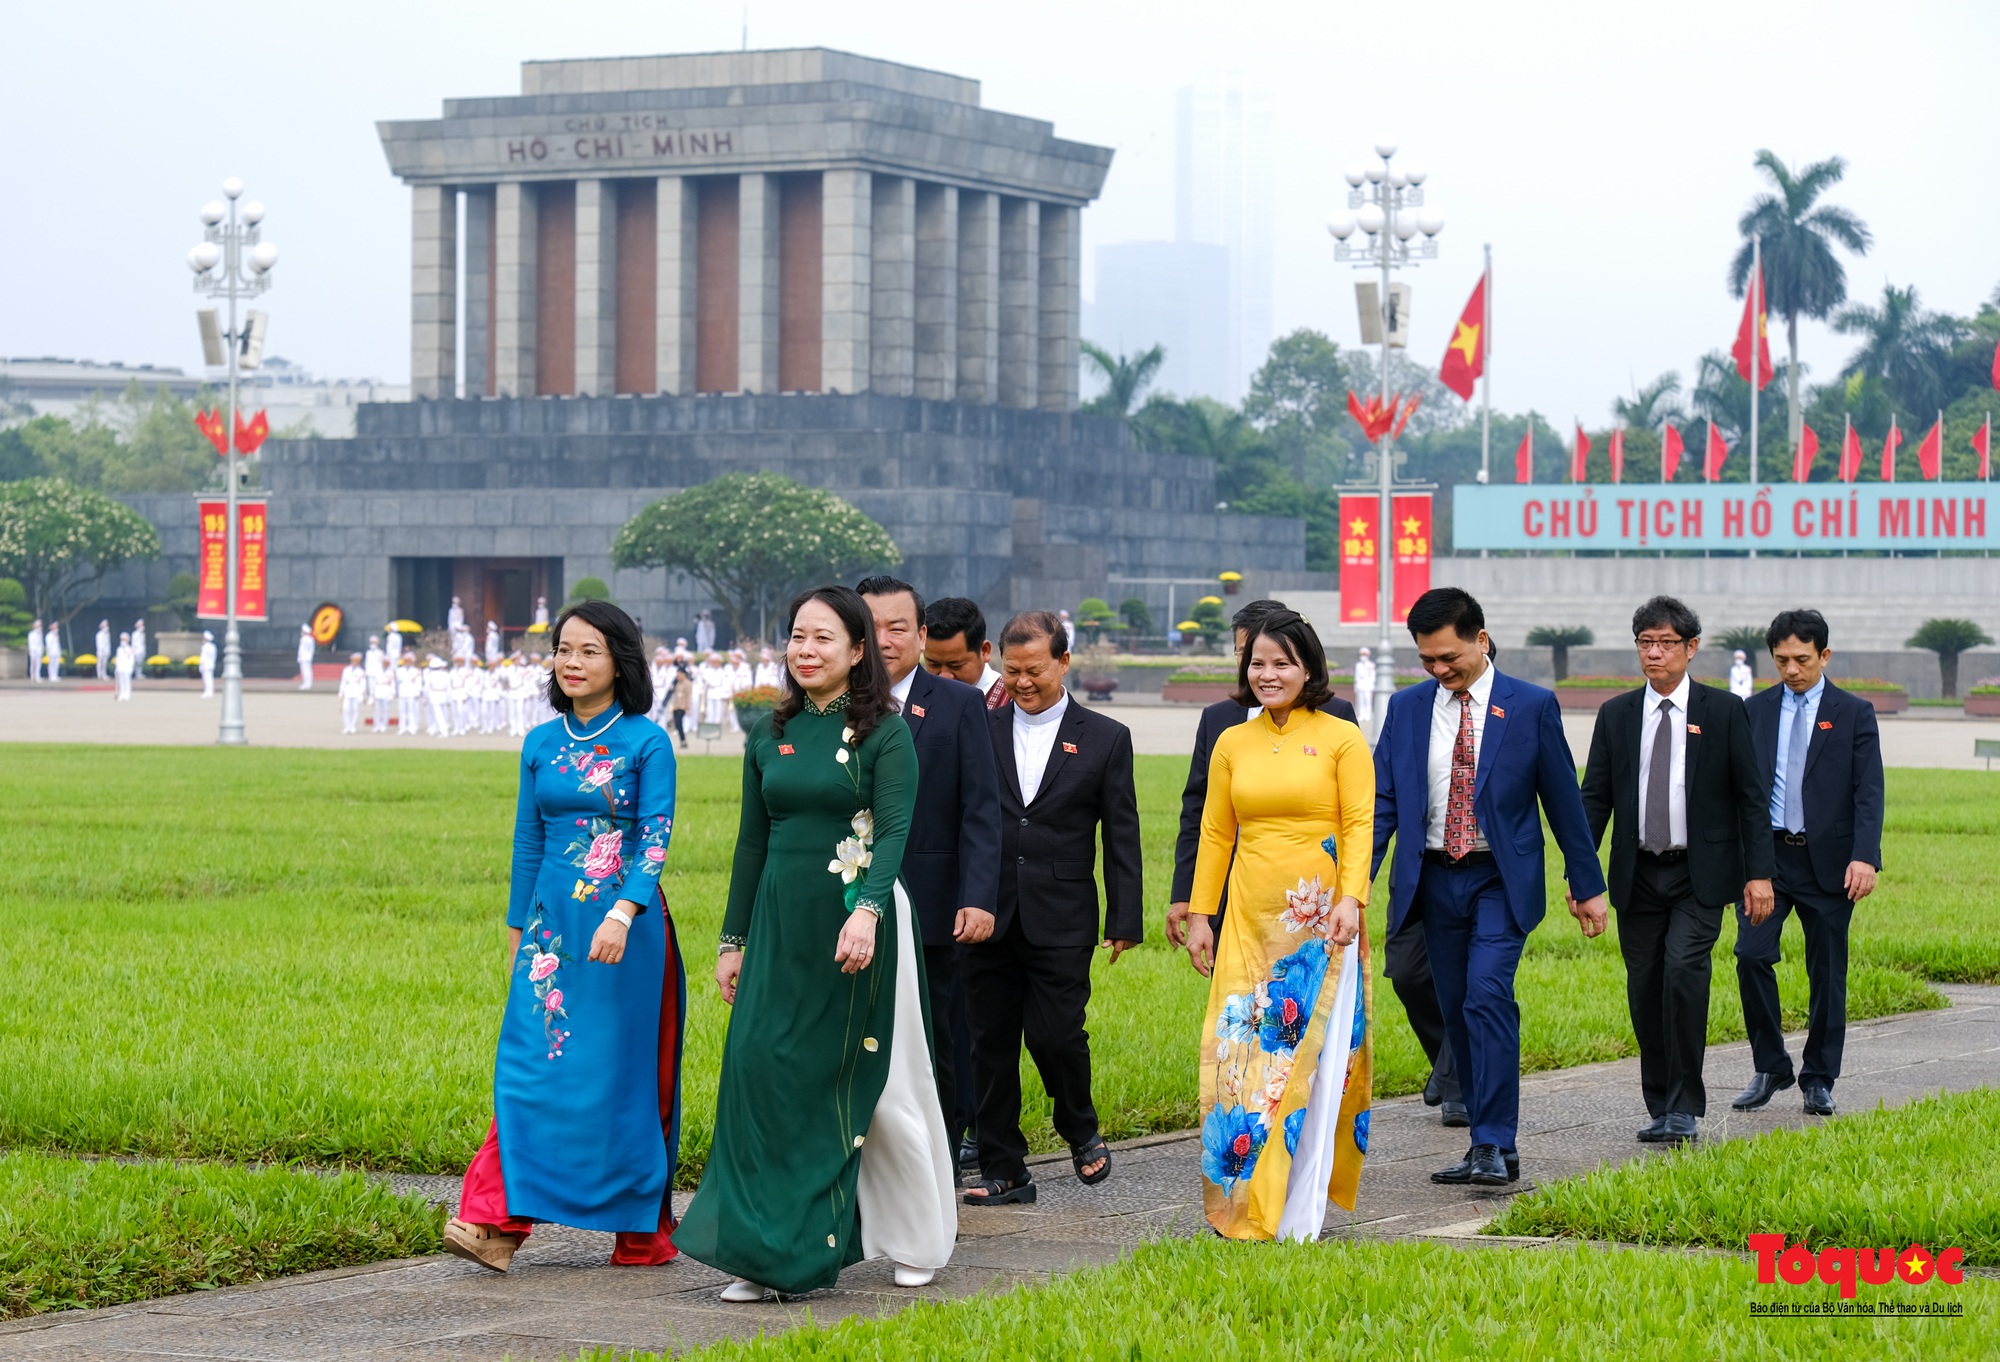 Lãnh đạo Đảng, Nhà nước và các đại biểu Quốc hội vào Lăng viếng Chủ tịch Hồ Chí Minh - Ảnh 10.